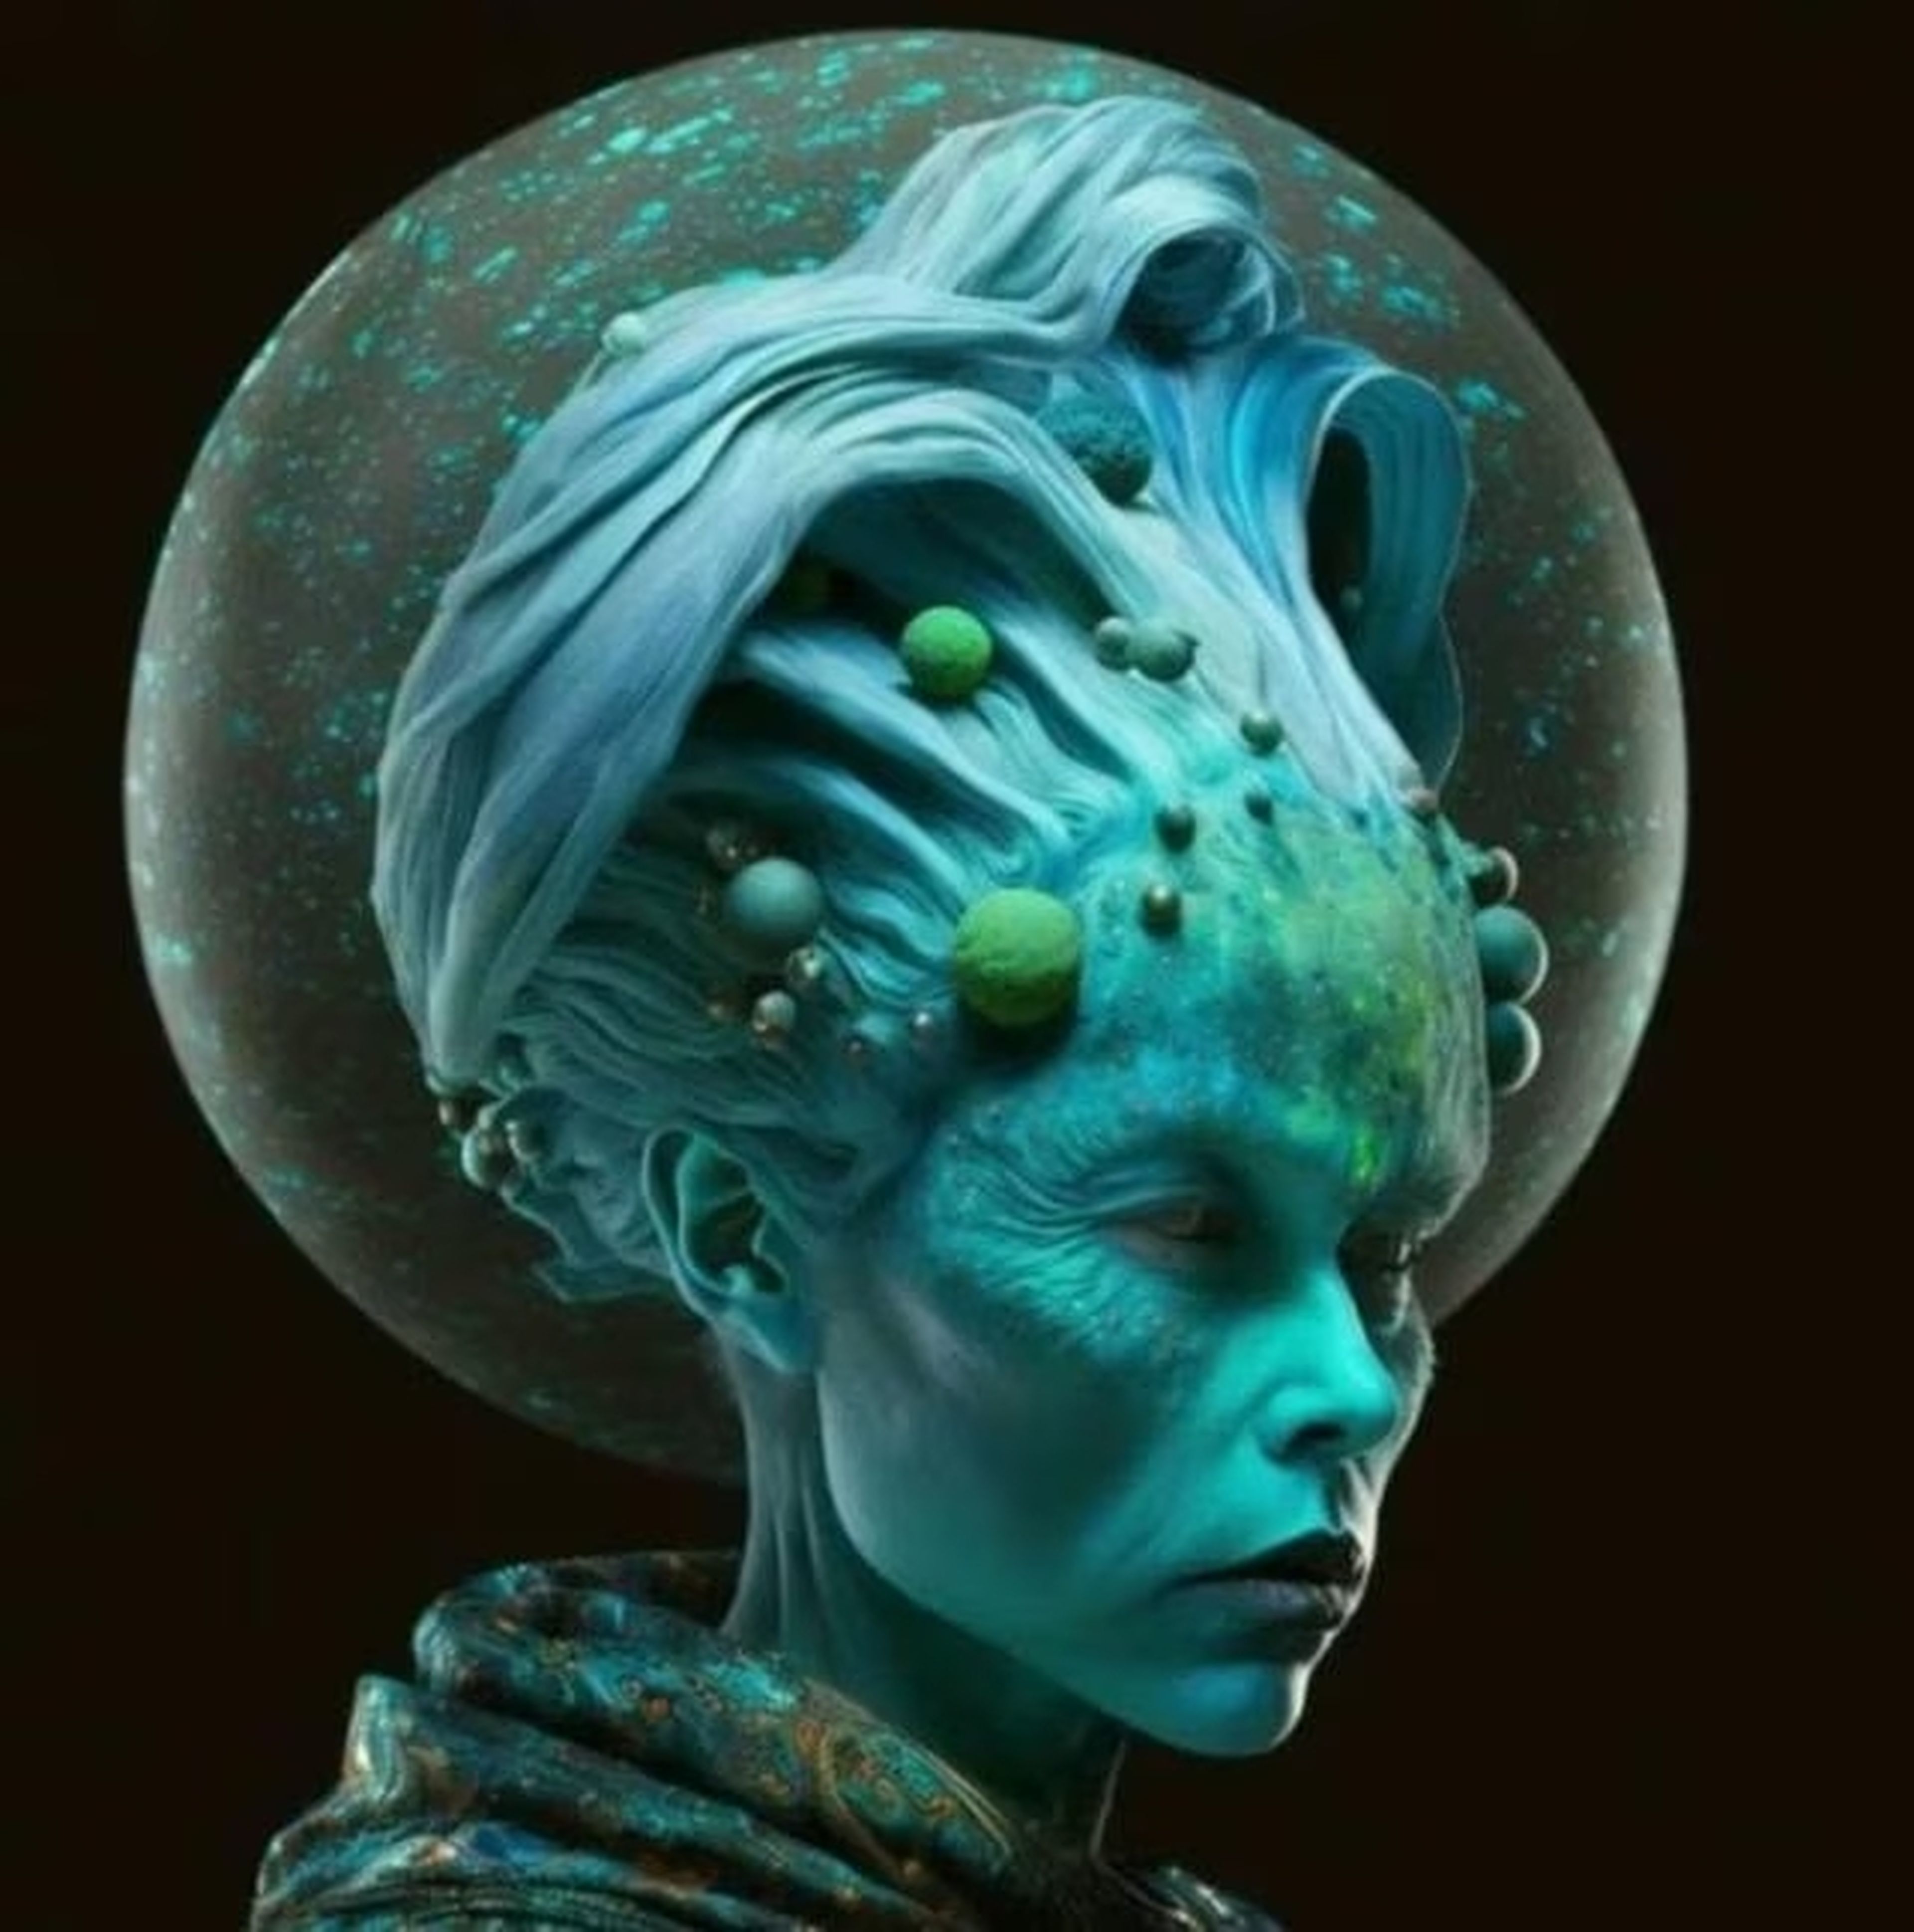 Habitante de Urano recreado artísticamente por Midjourney